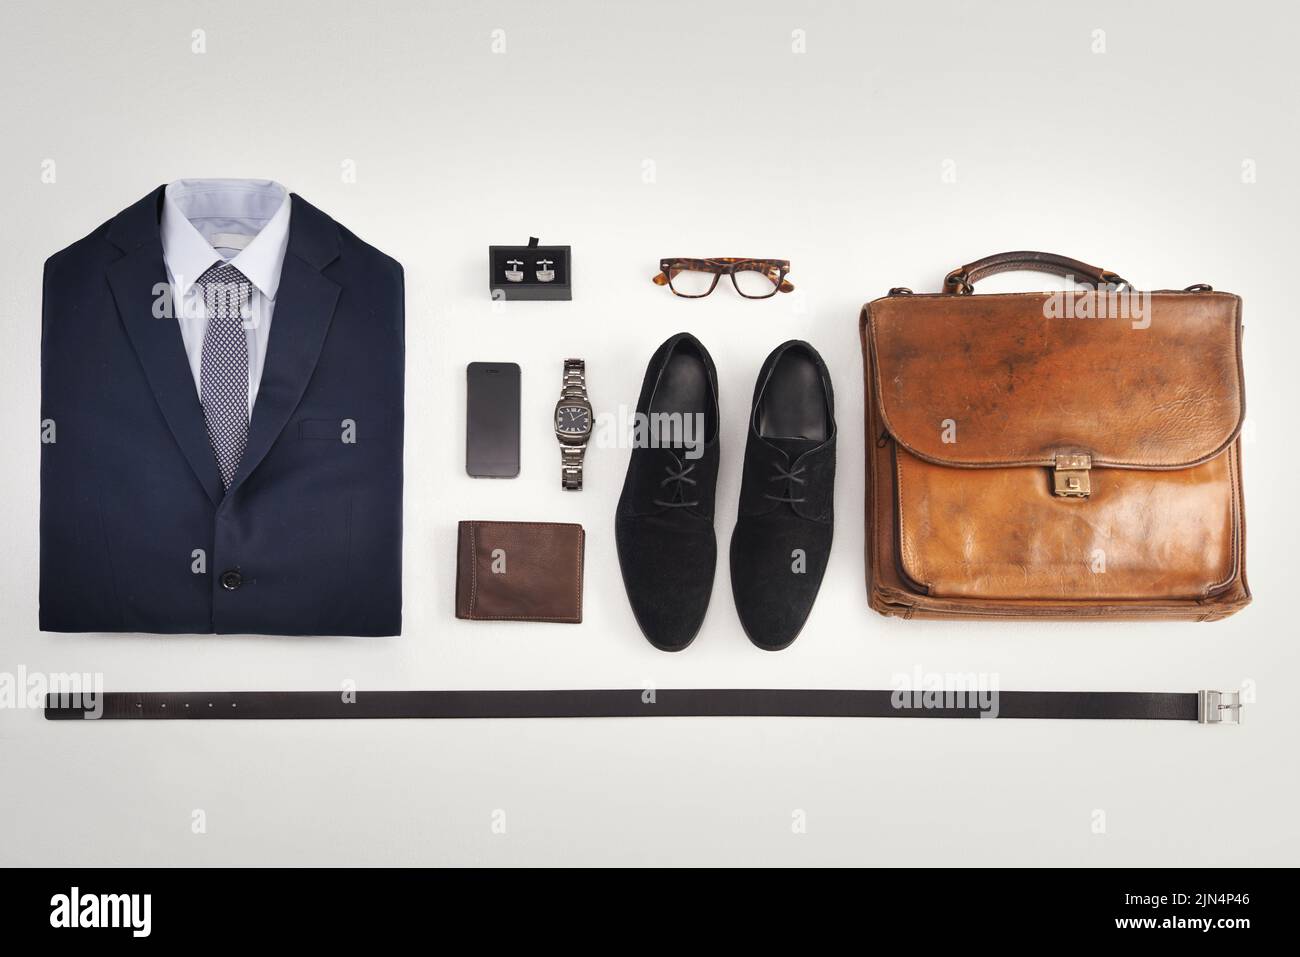 Flatlay von Business-Anzug, Corporate formelle Kleidung mit Mode-Accessoires auf einem weißen Tisch Hintergrund. Stillleben über dem Blick auf moderne Kleidung Stil Stockfoto